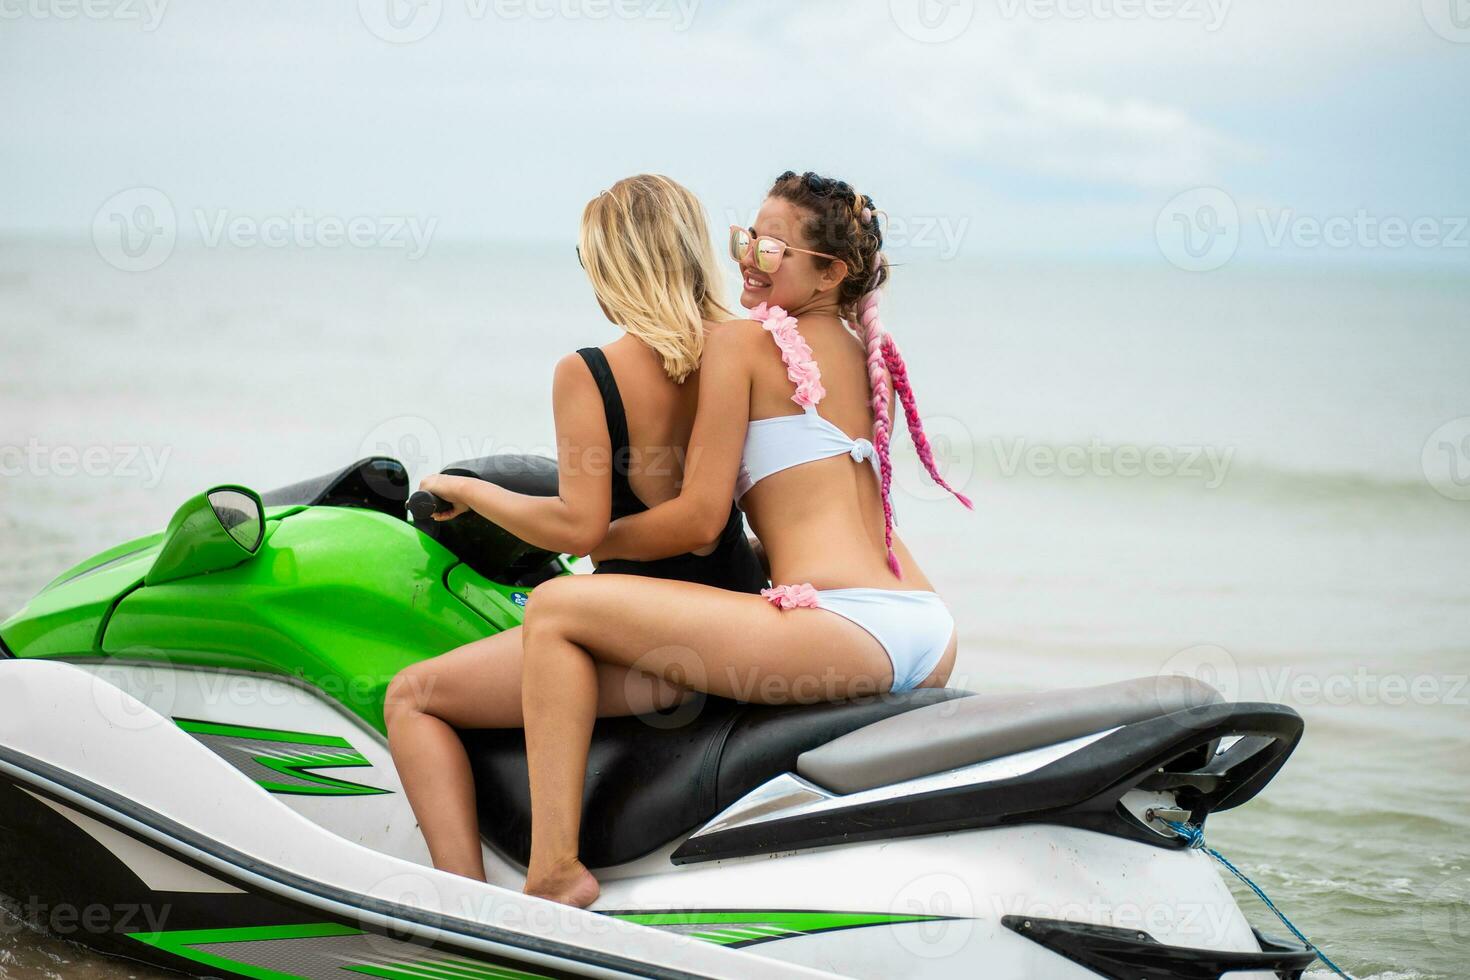 dos sexy mujer en bikini en agua scooter en mar verano estilo foto